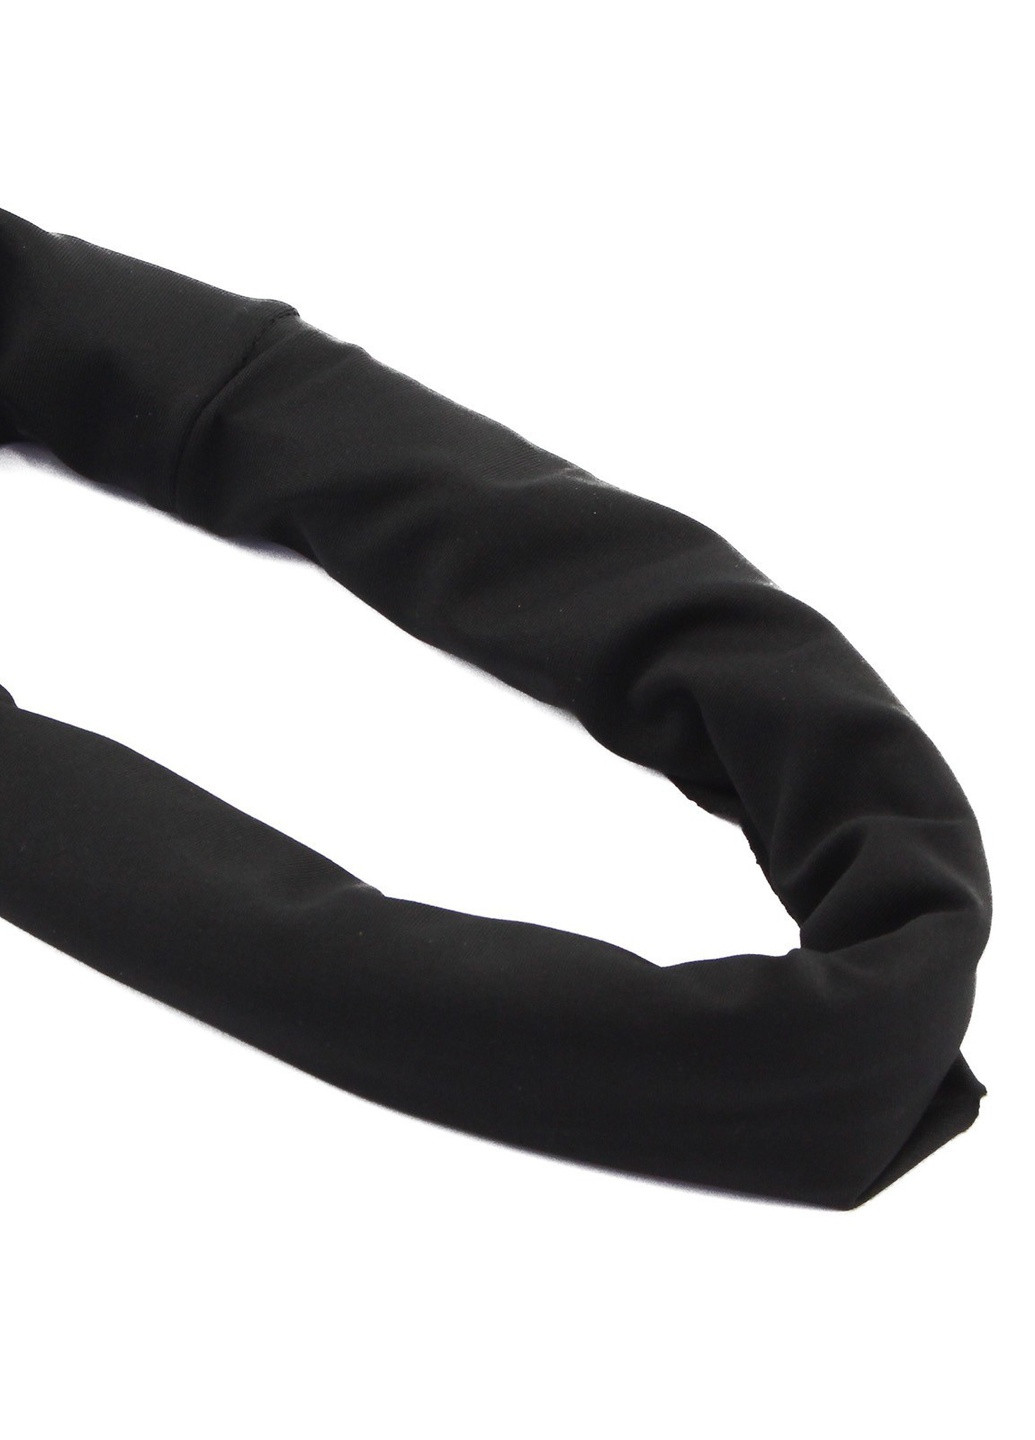 MFH шарф-балаклава трикотажний чорний (10173a) чорний спортивний виробництво - Німеччина